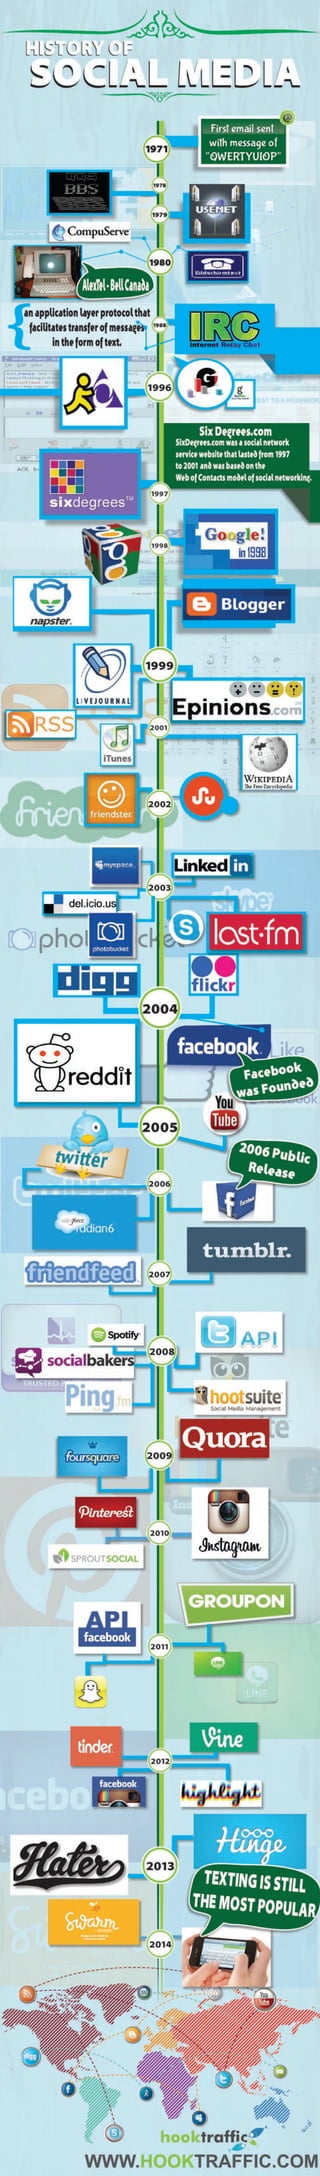 History of Social Media by Hook Traffic